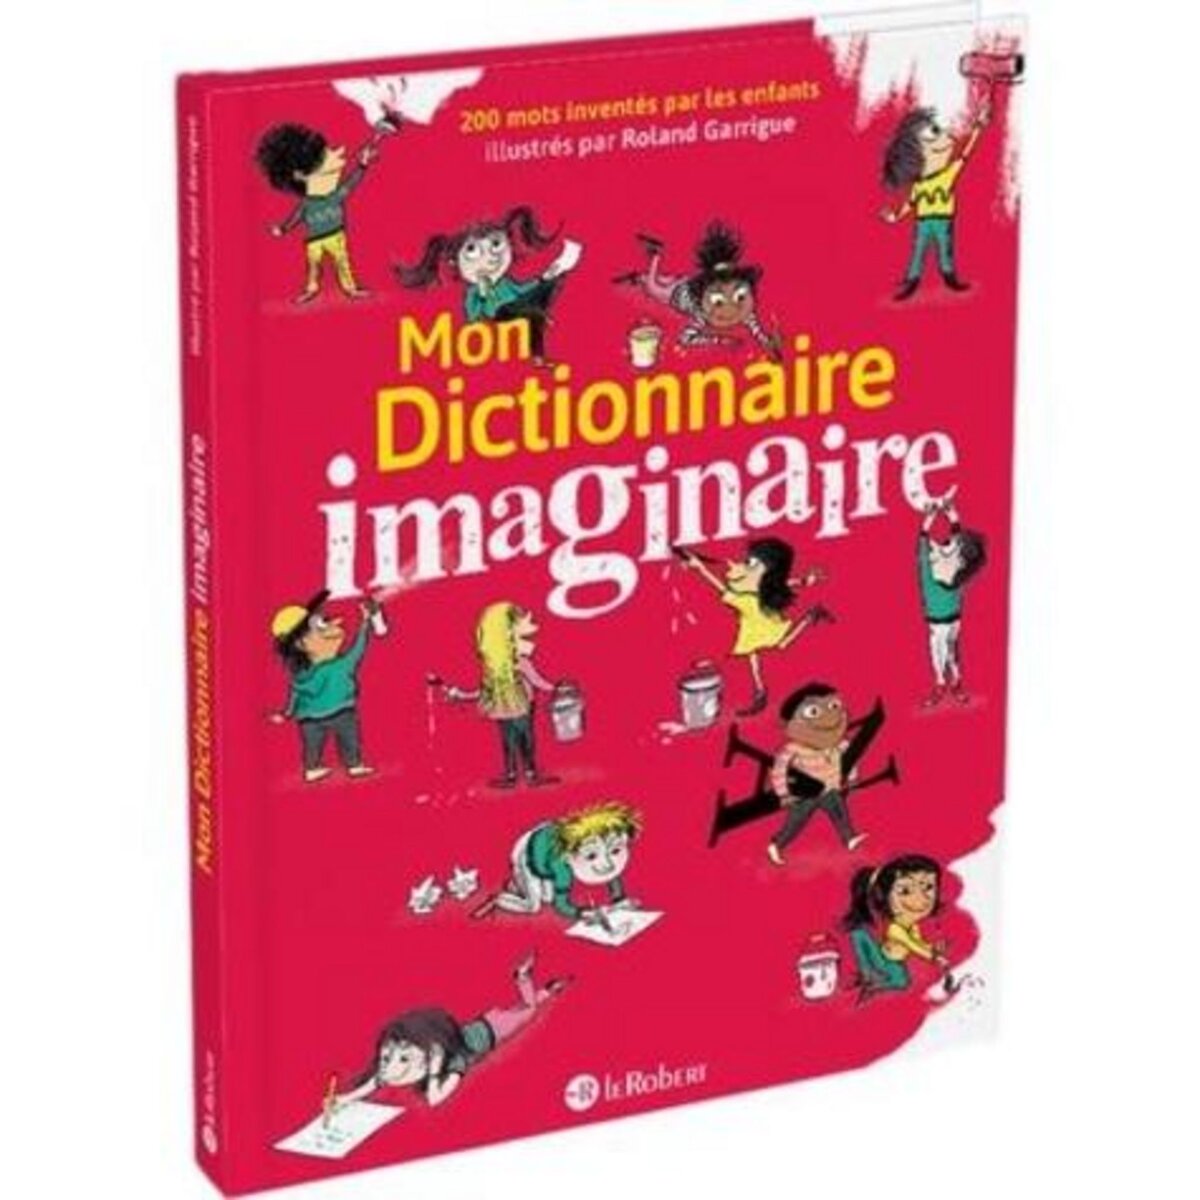 Dictionnaire enfant